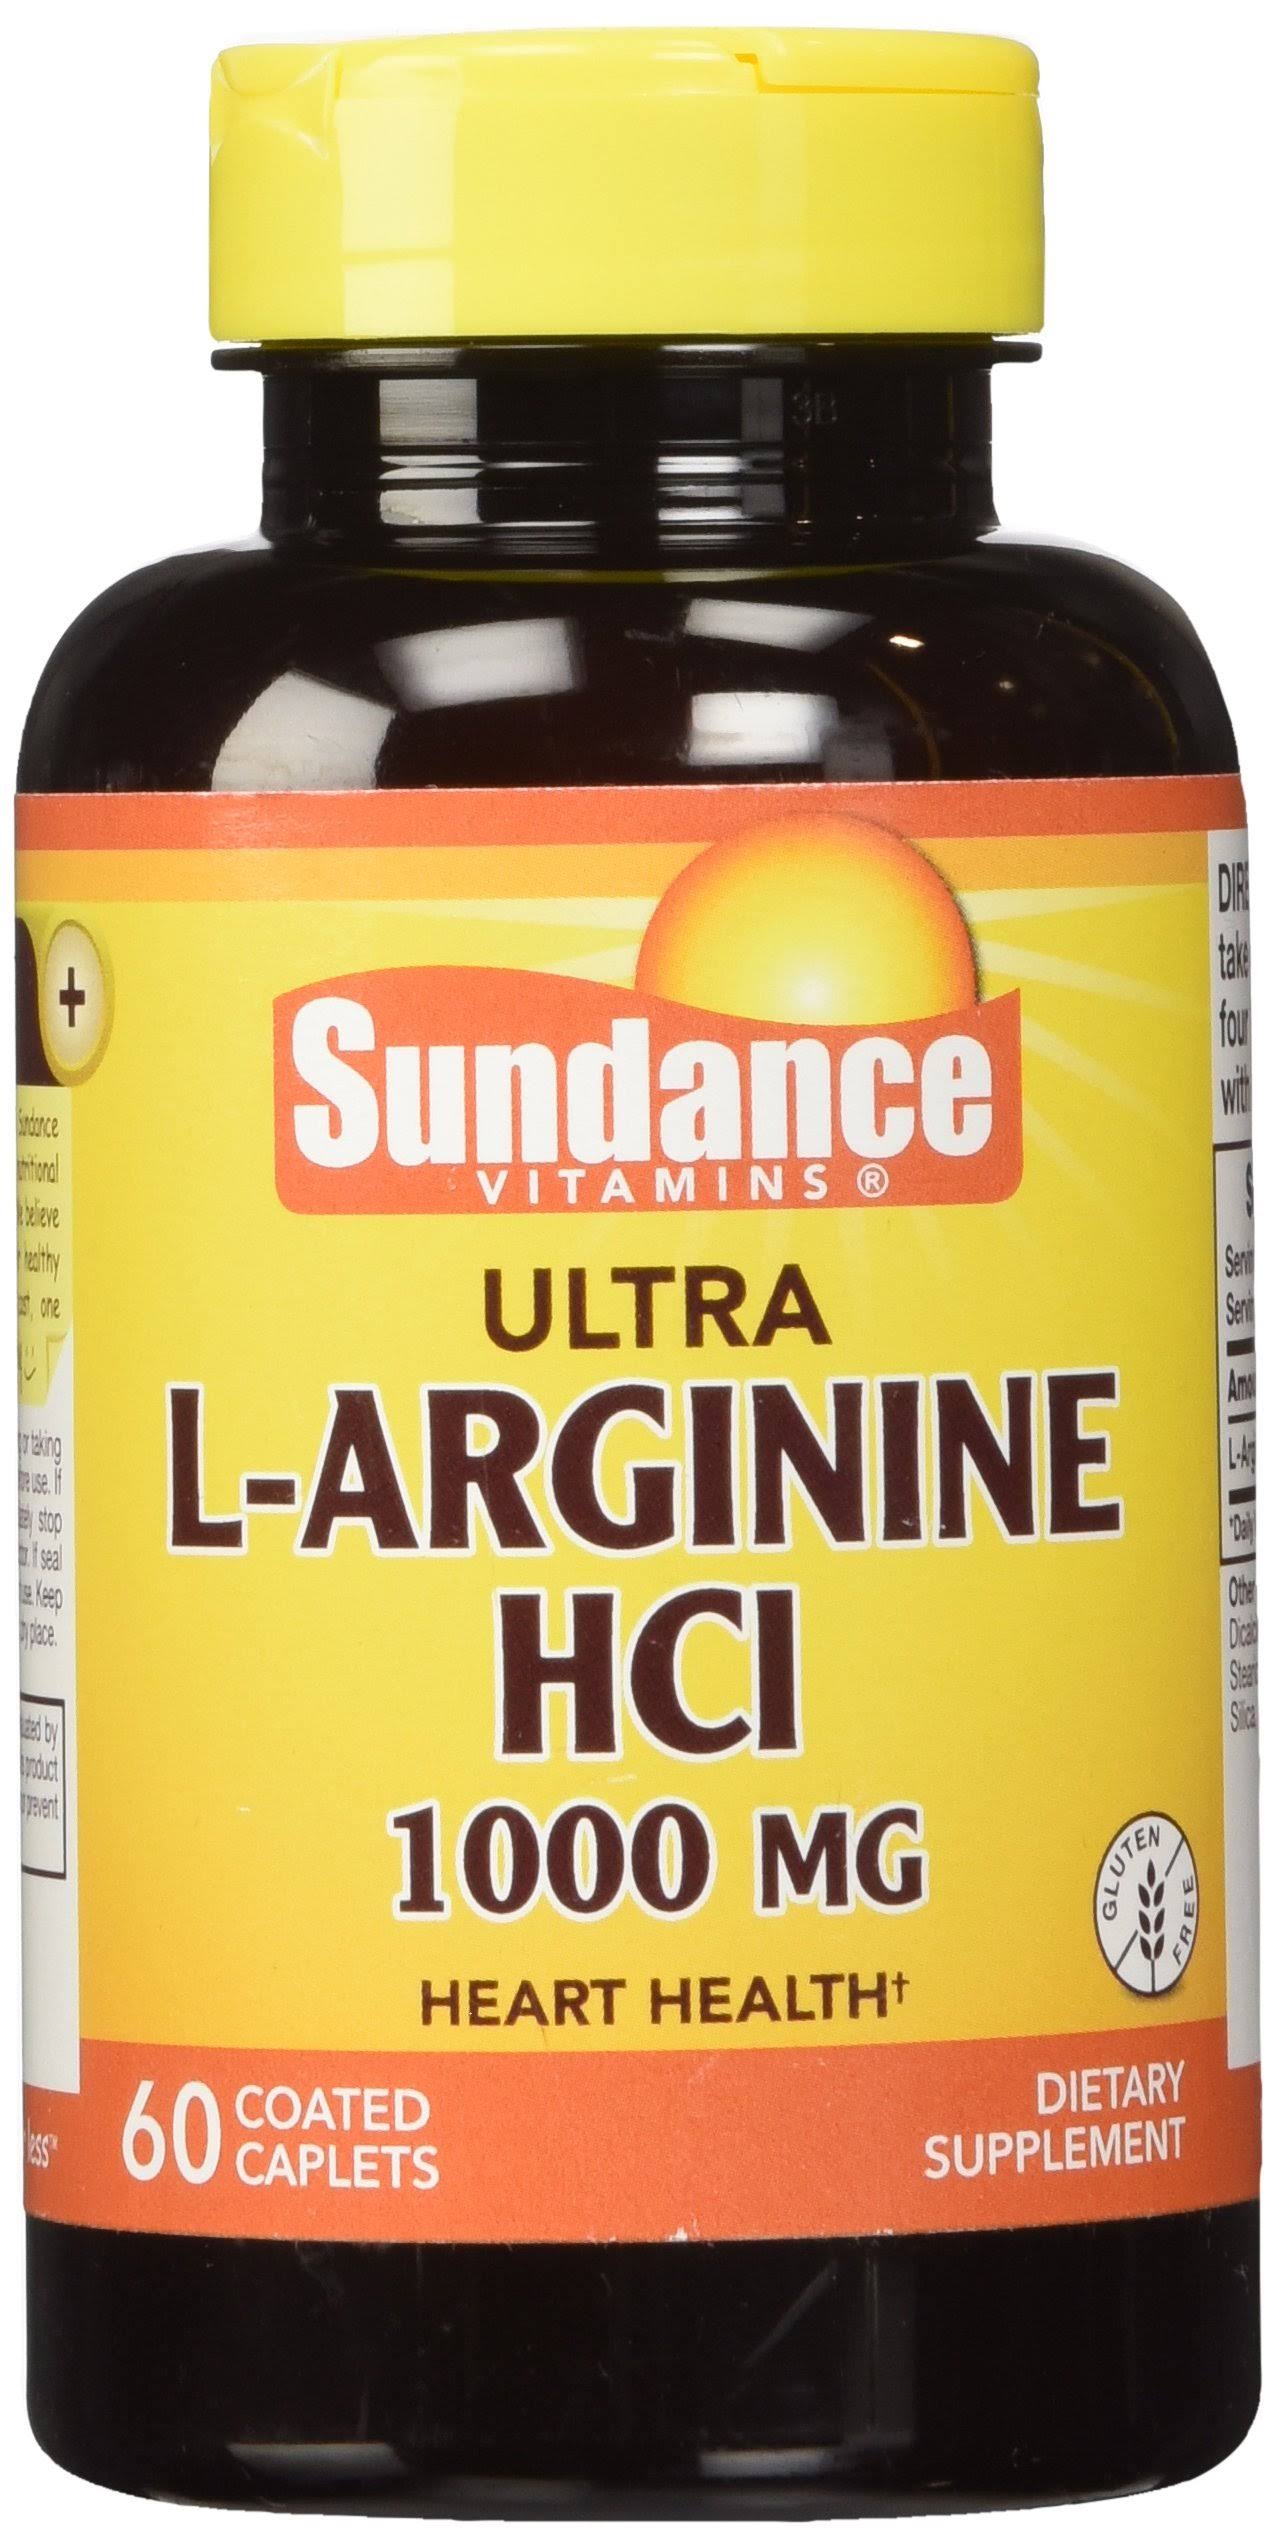 Sundance Ultra L-arginine HCL Dietary Supplement - 1000mg, 60ct